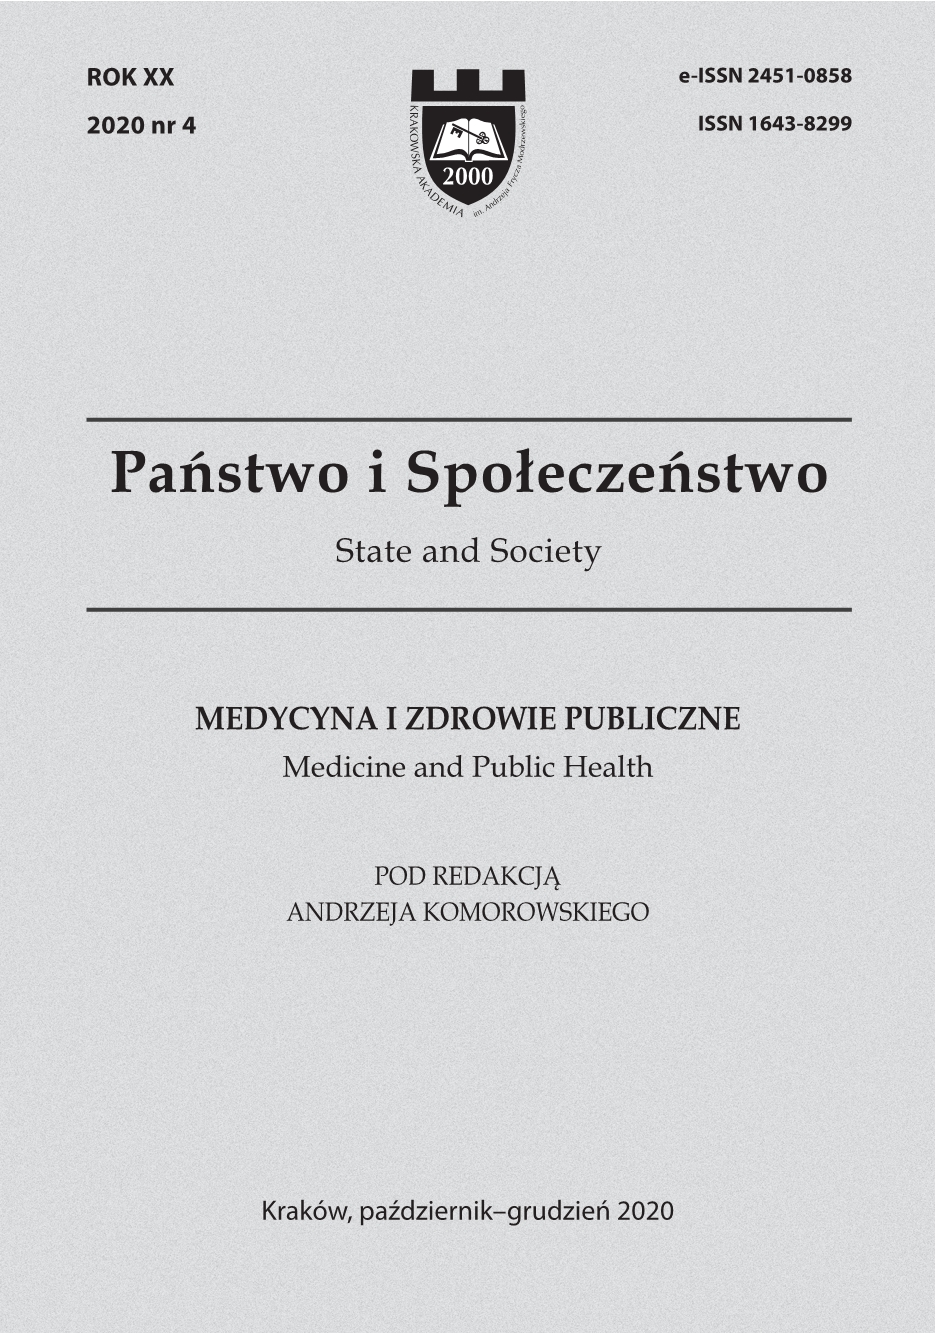 Family – Health – Disease, eds. Filip Gołkowski, Małgorzata Kalemba-Drożdż